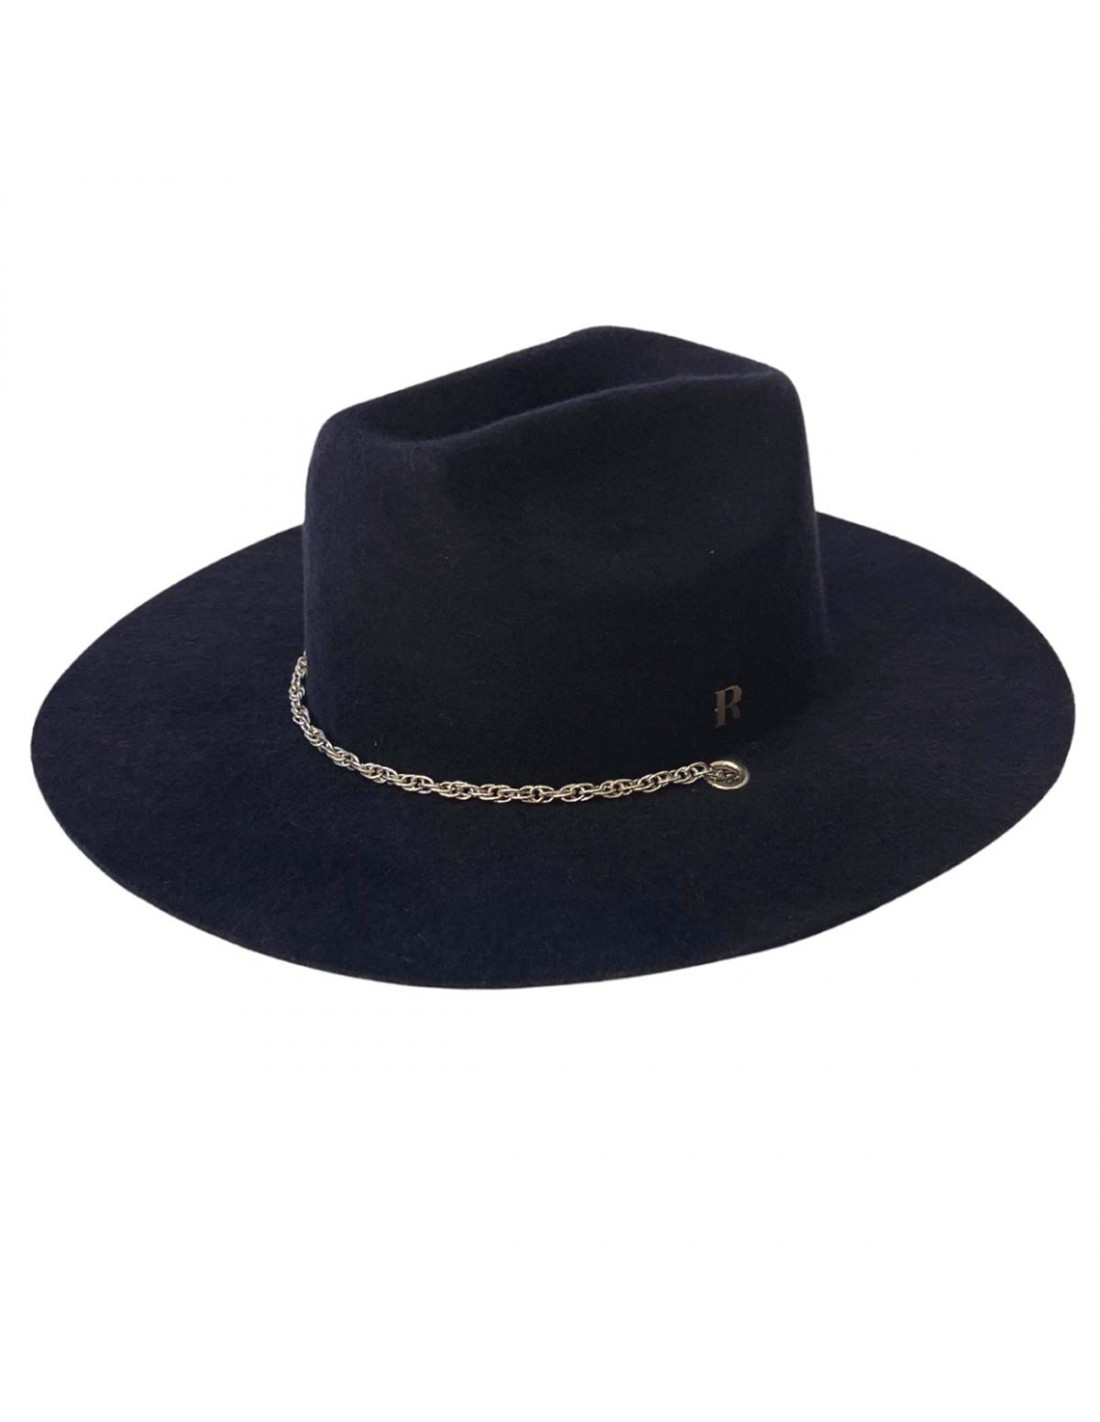 Sombrero Cowboy Mujer Azul Marino Cadena Plateada - Sombrero Vaquero Mujer